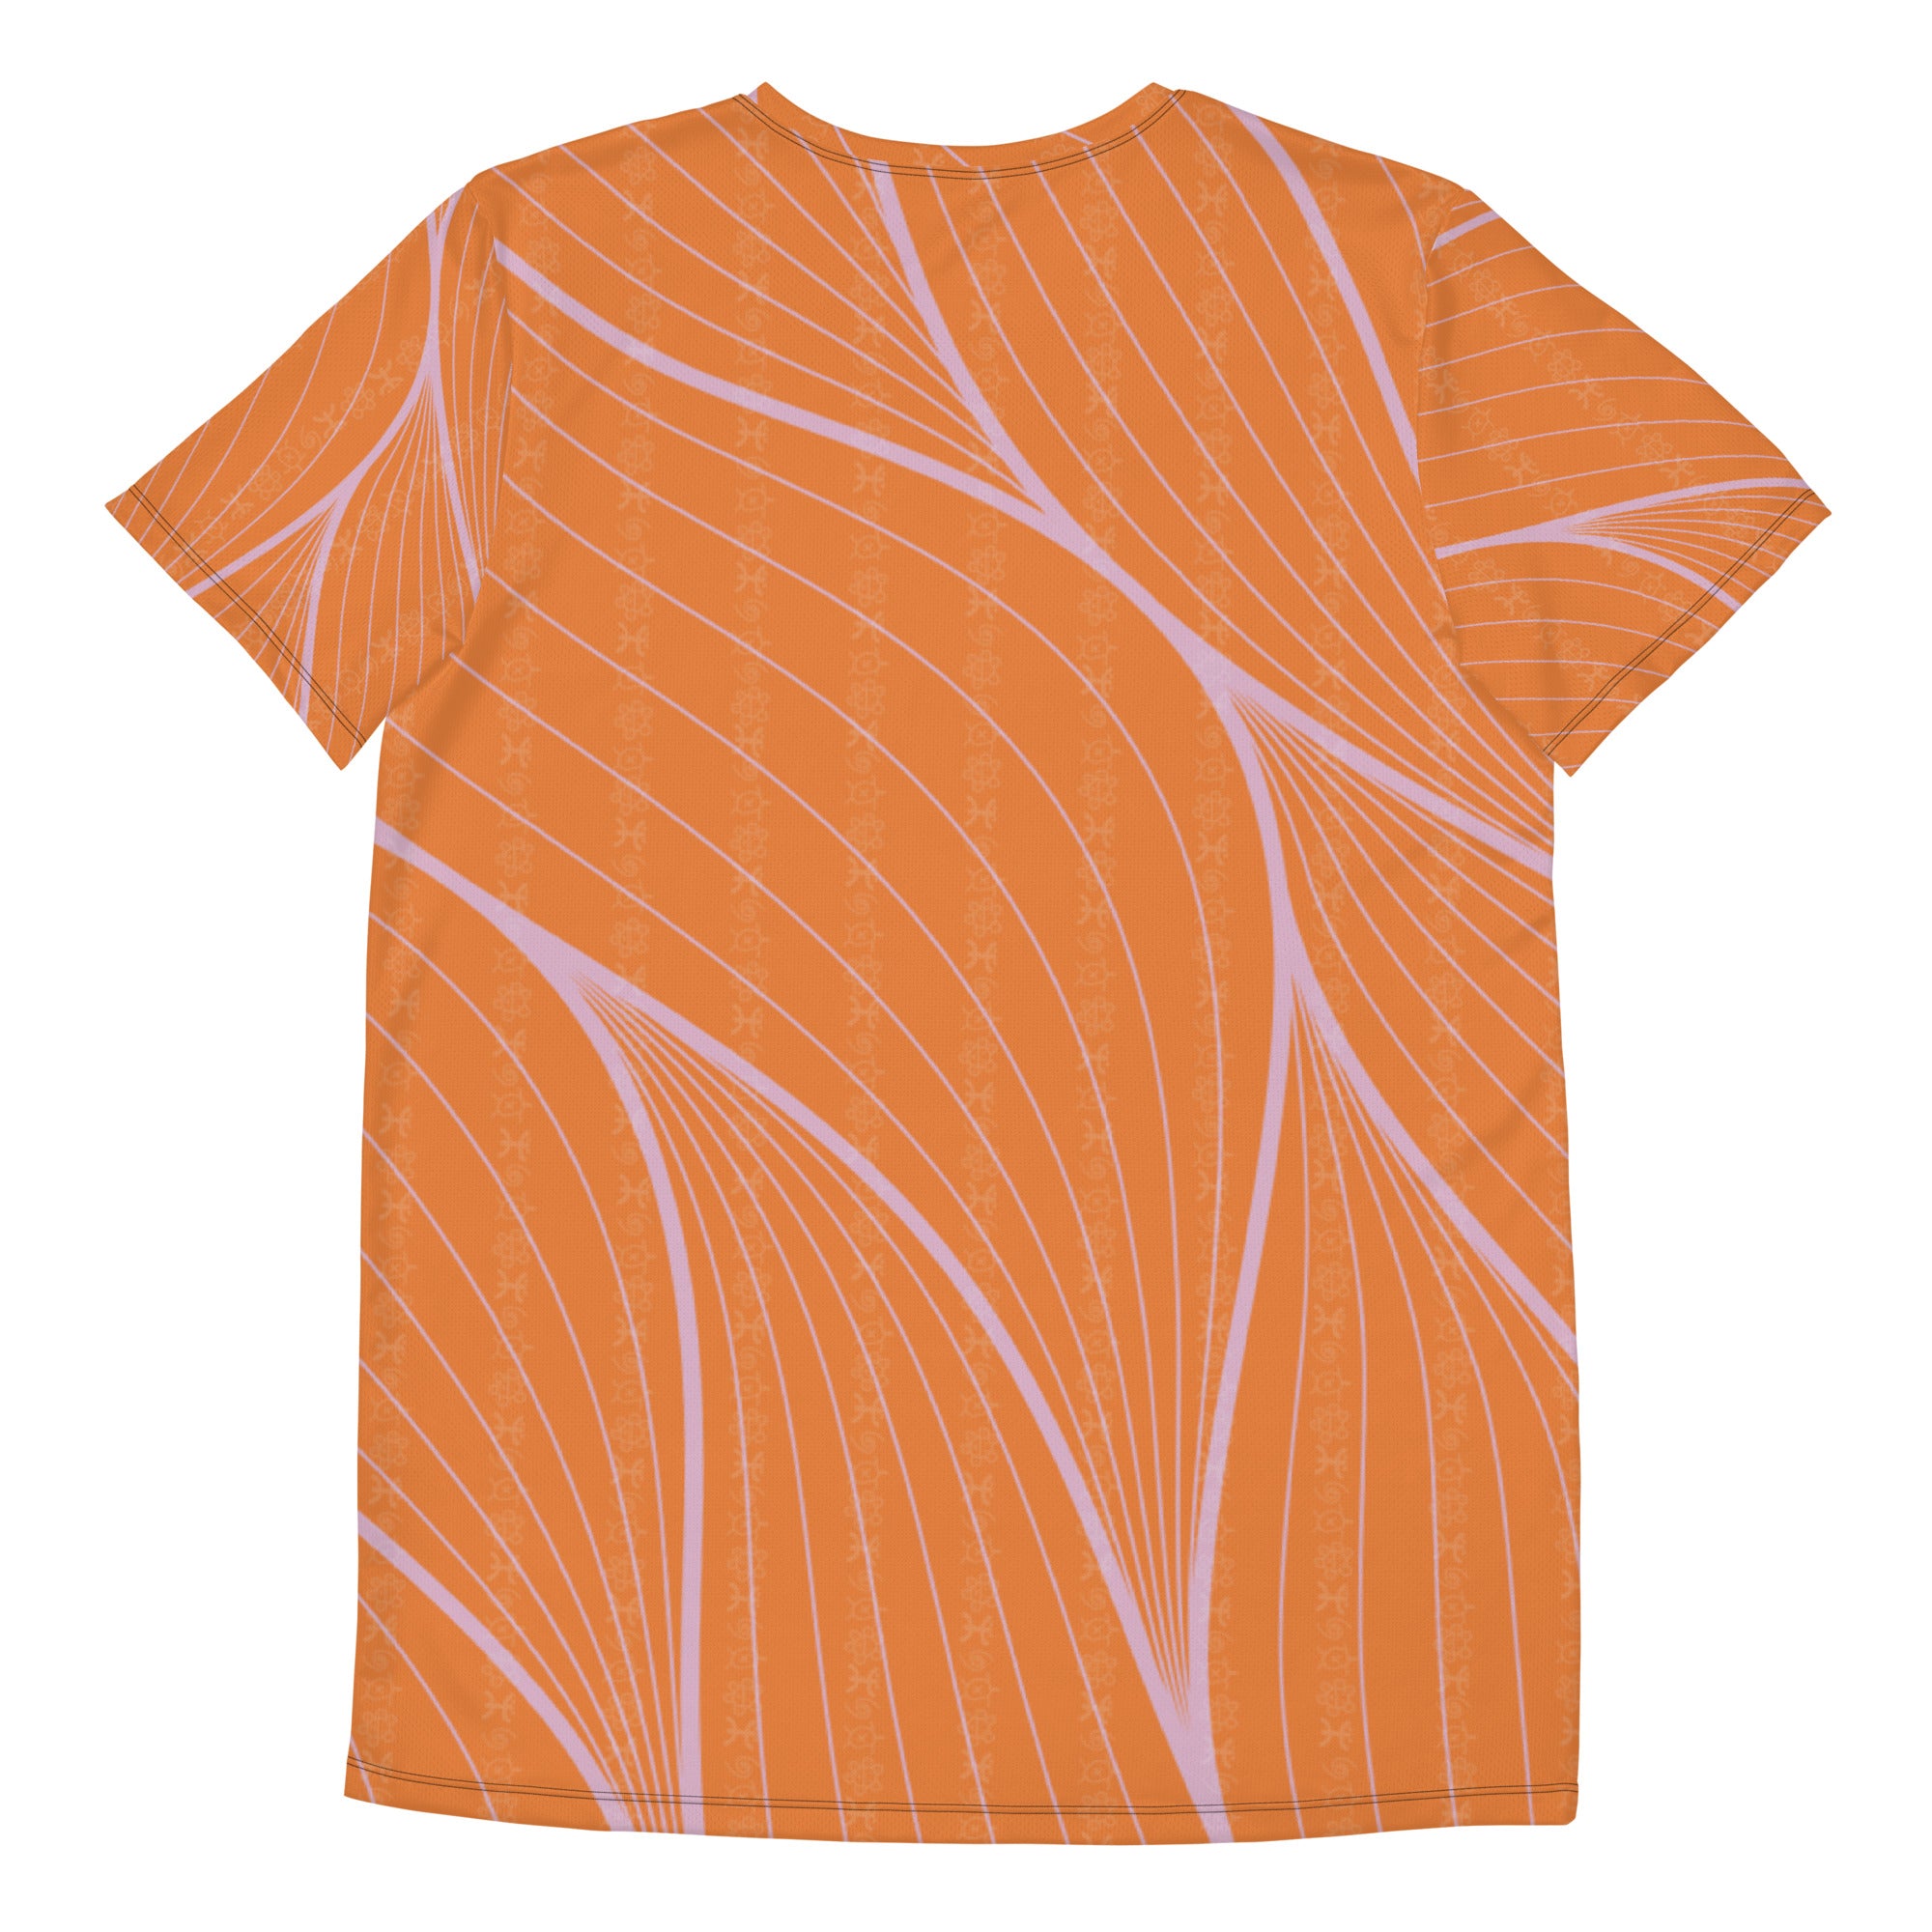 AGAD Tribal Men's Short Sleeve (Vibrant Orange)